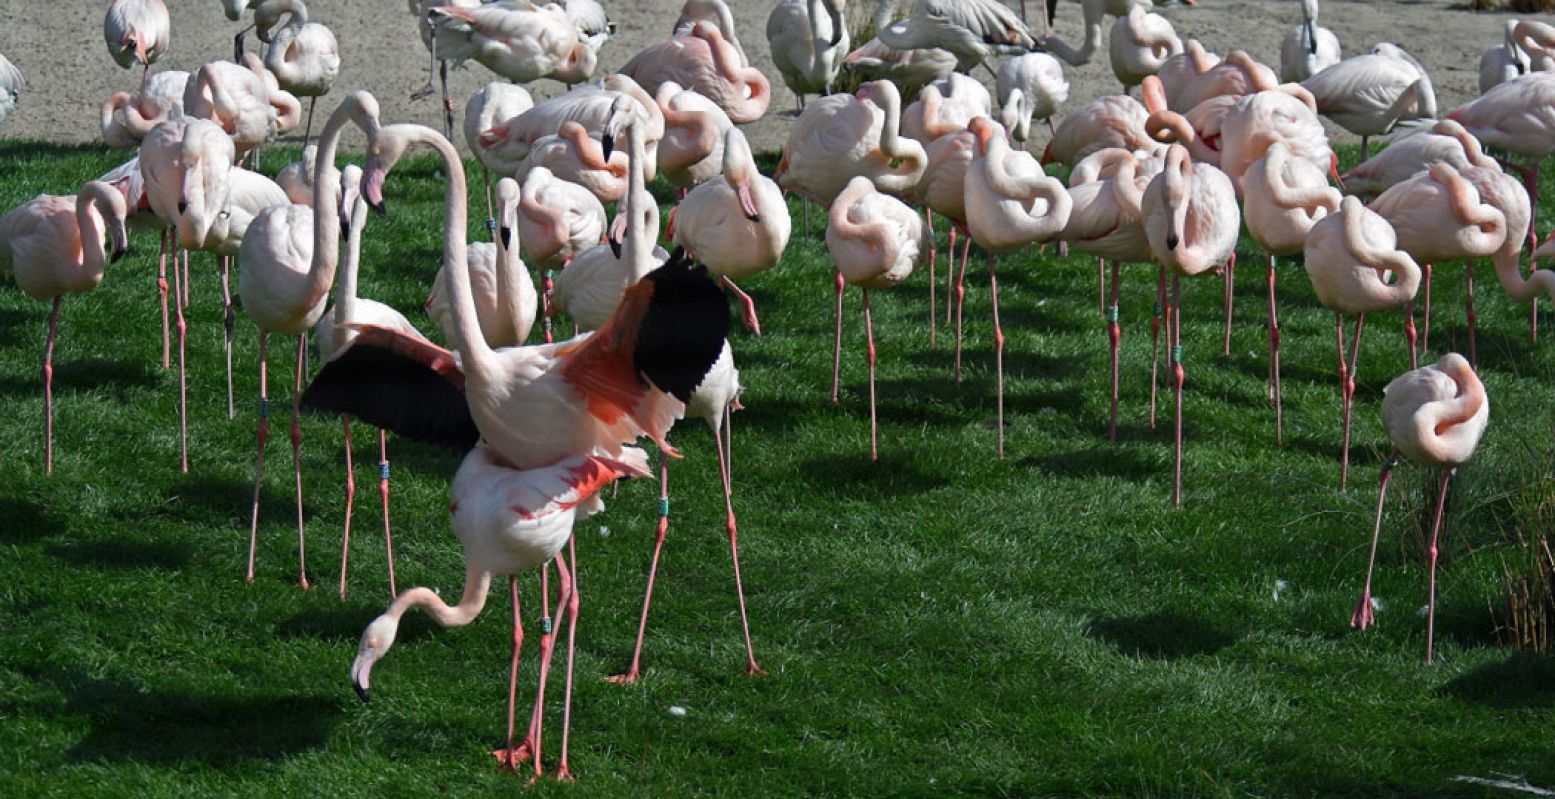 De flamingo's in Diergaarde Blijdorp hebben het gezellig in hun nieuwe diervriendelijke verblijf. Foto: Diergaarde Blijdorp